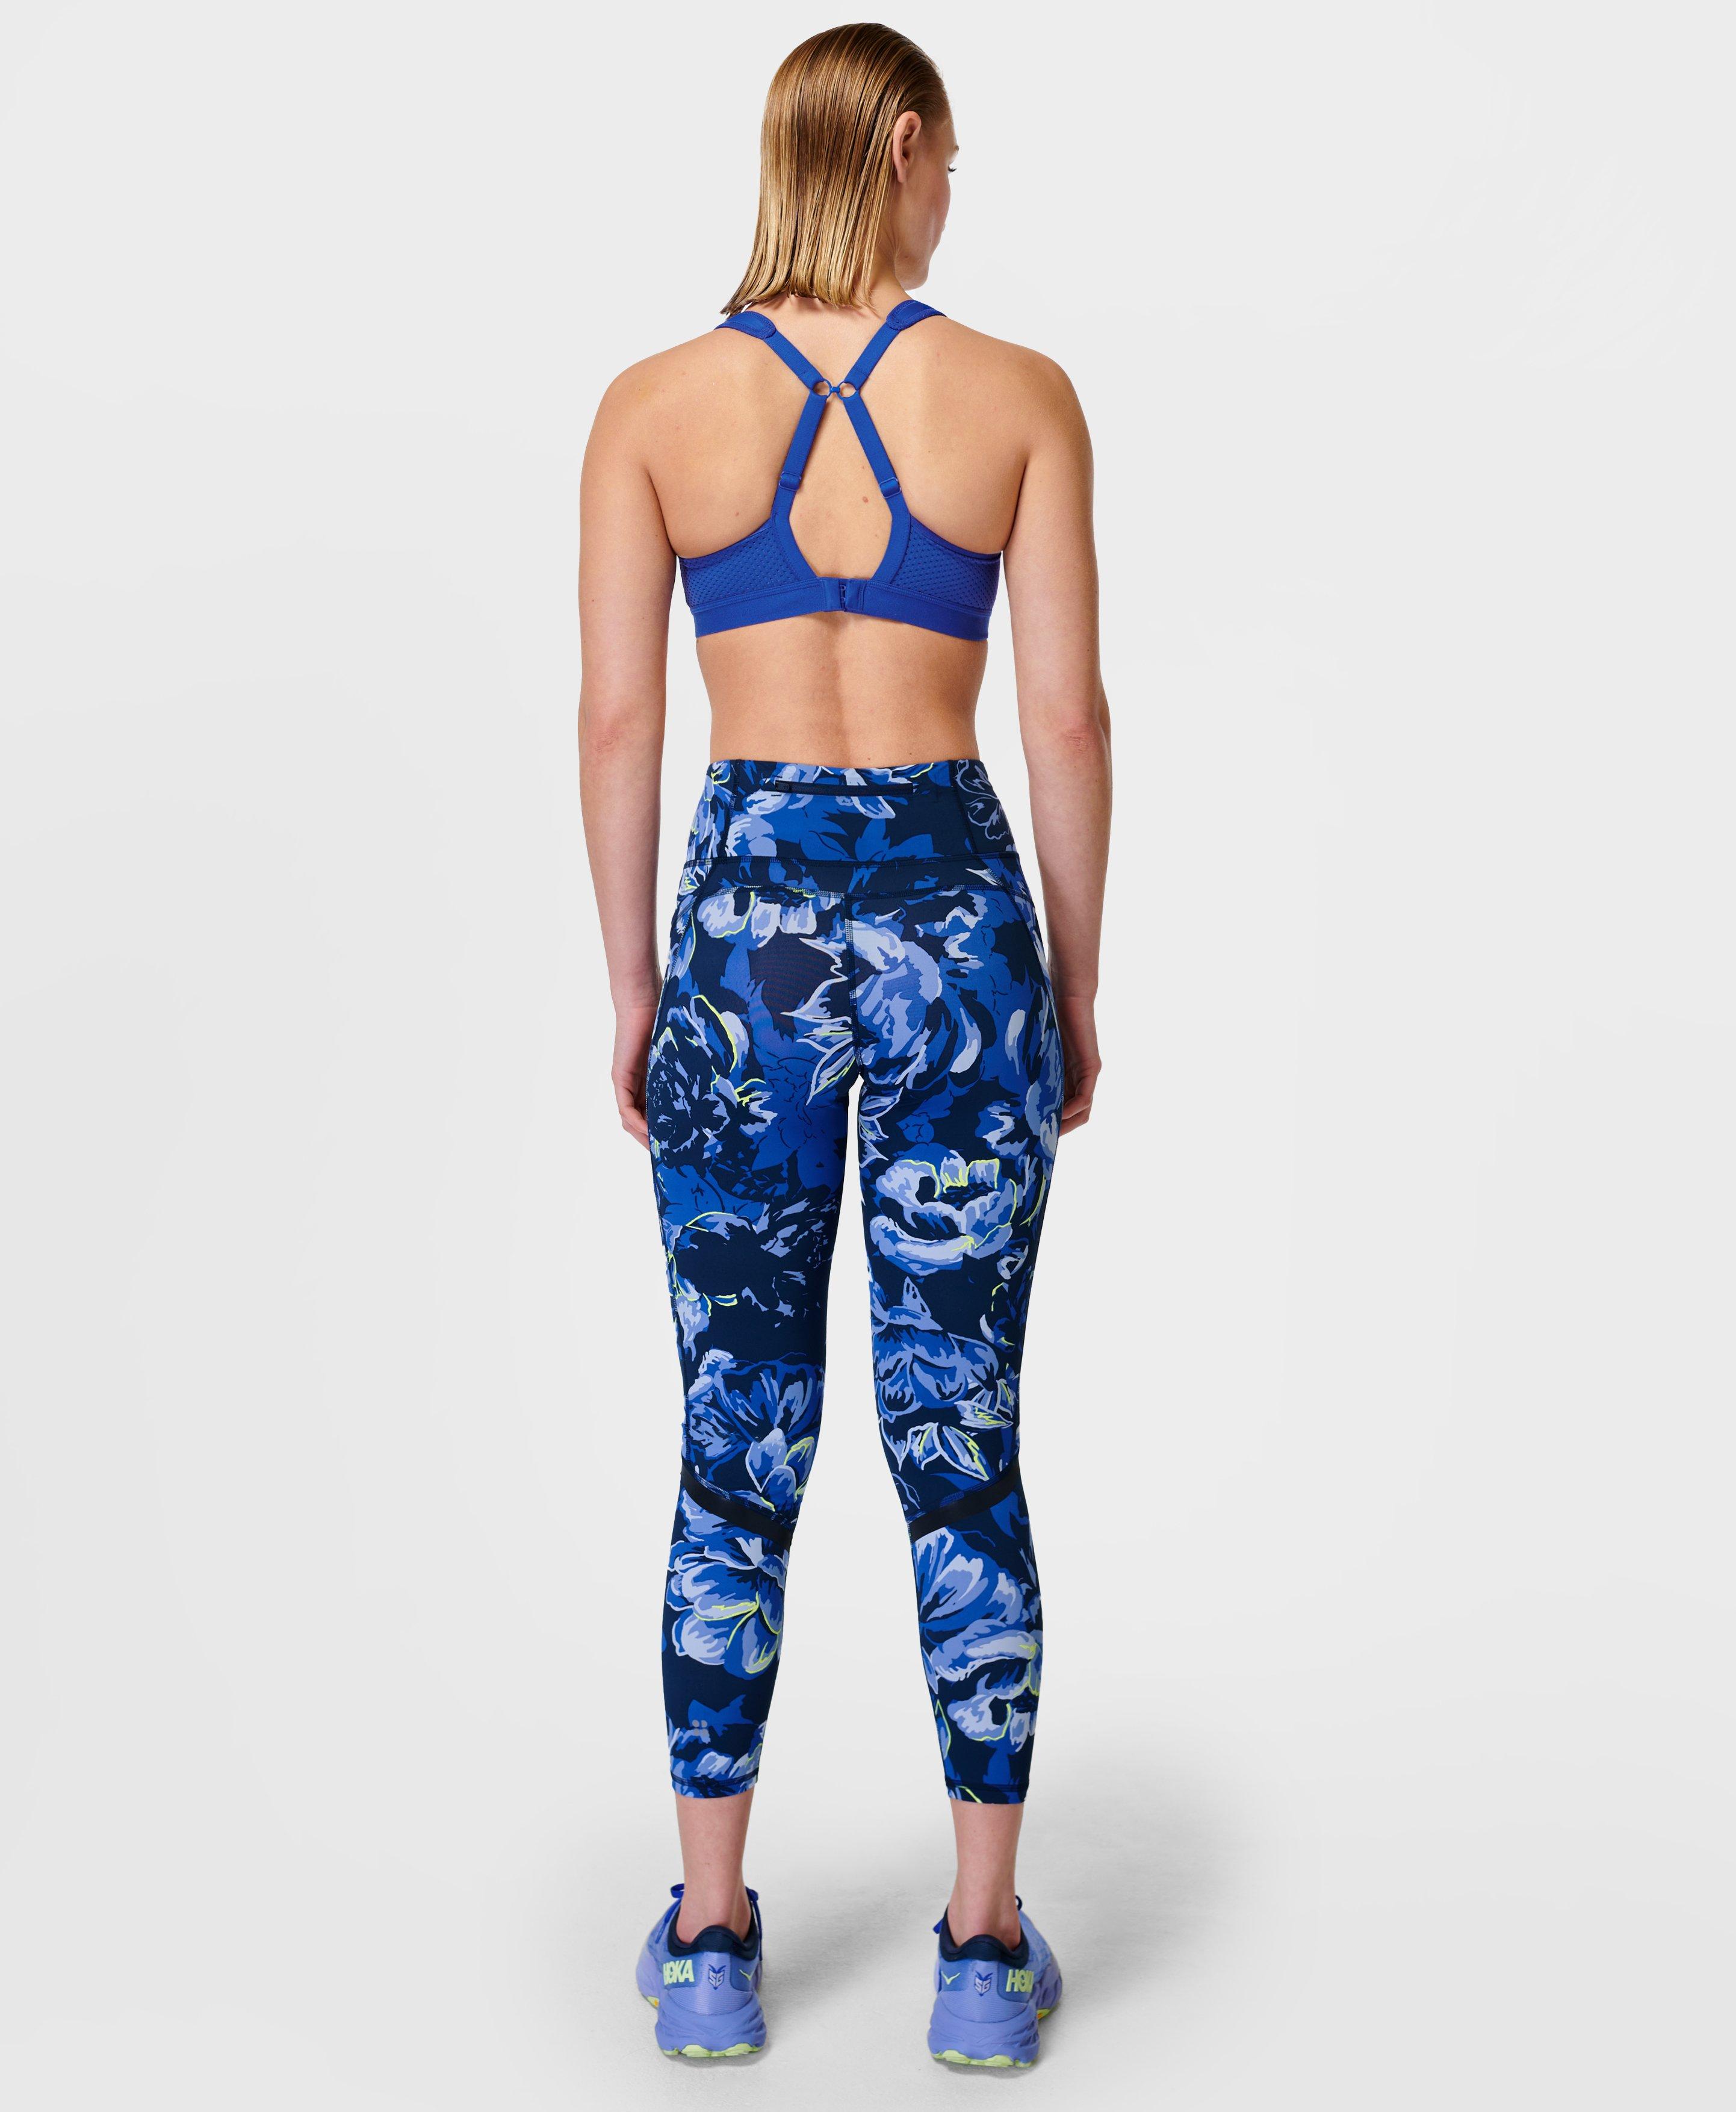 Best Deal for Womens Leggings, 7 Pack High Waist Yoga Pants for